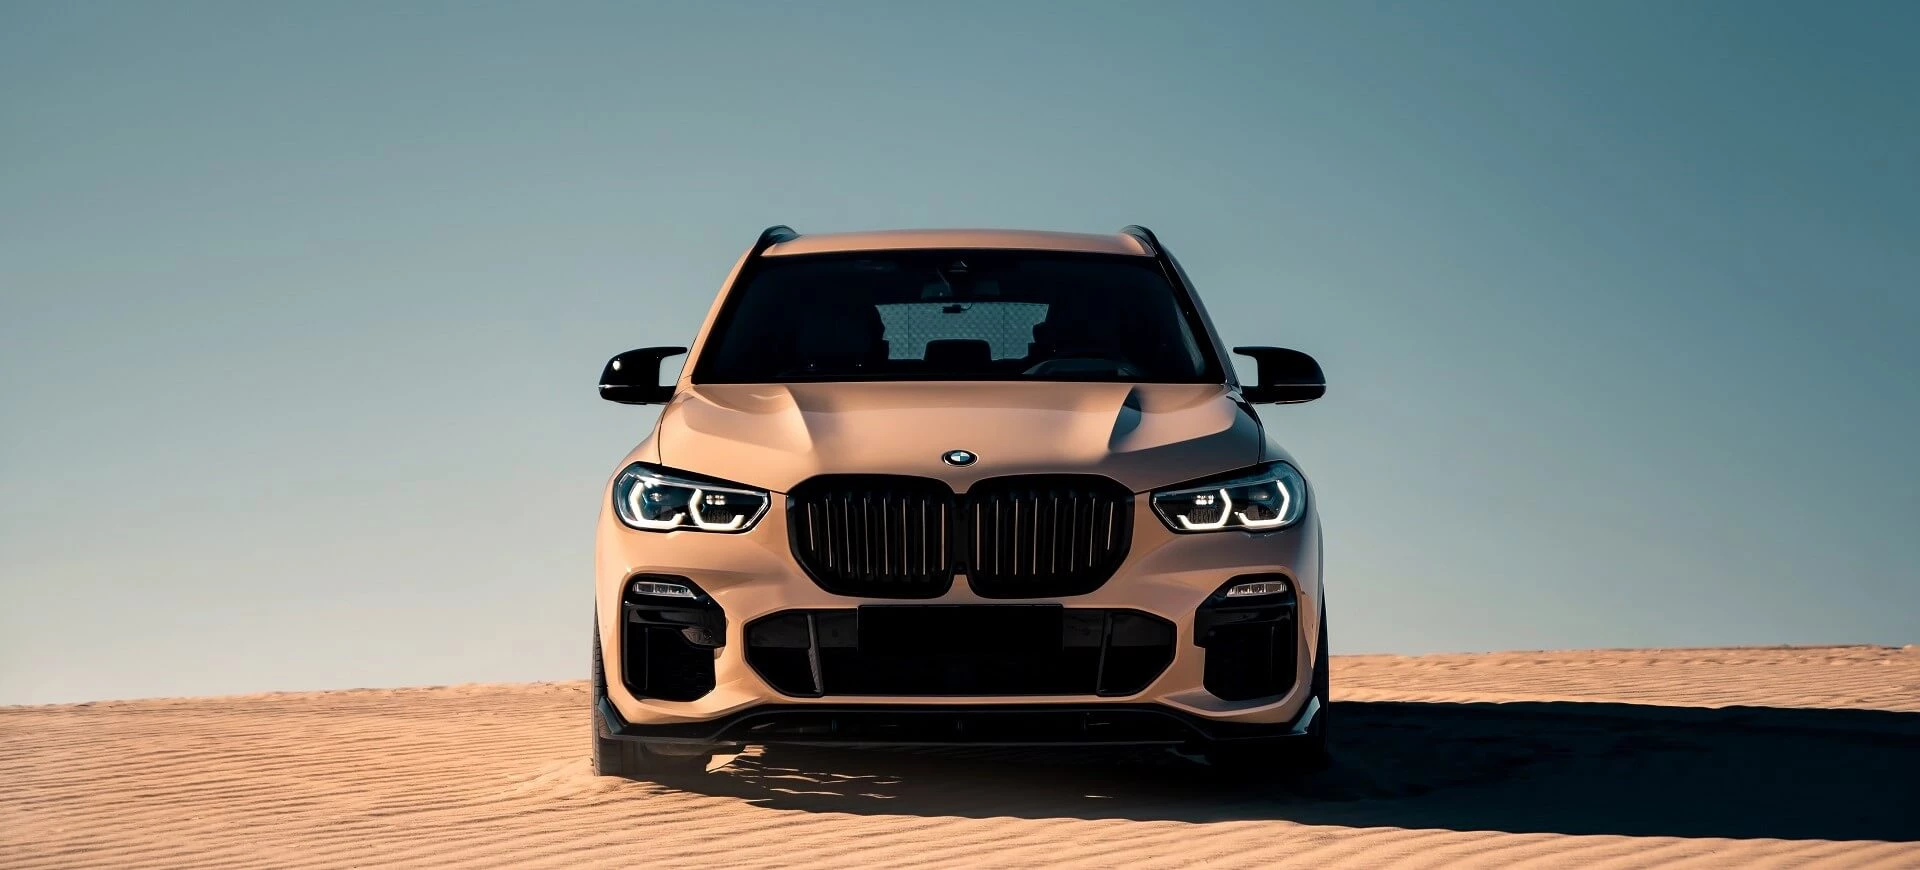 BMW X5 Солнечный камень